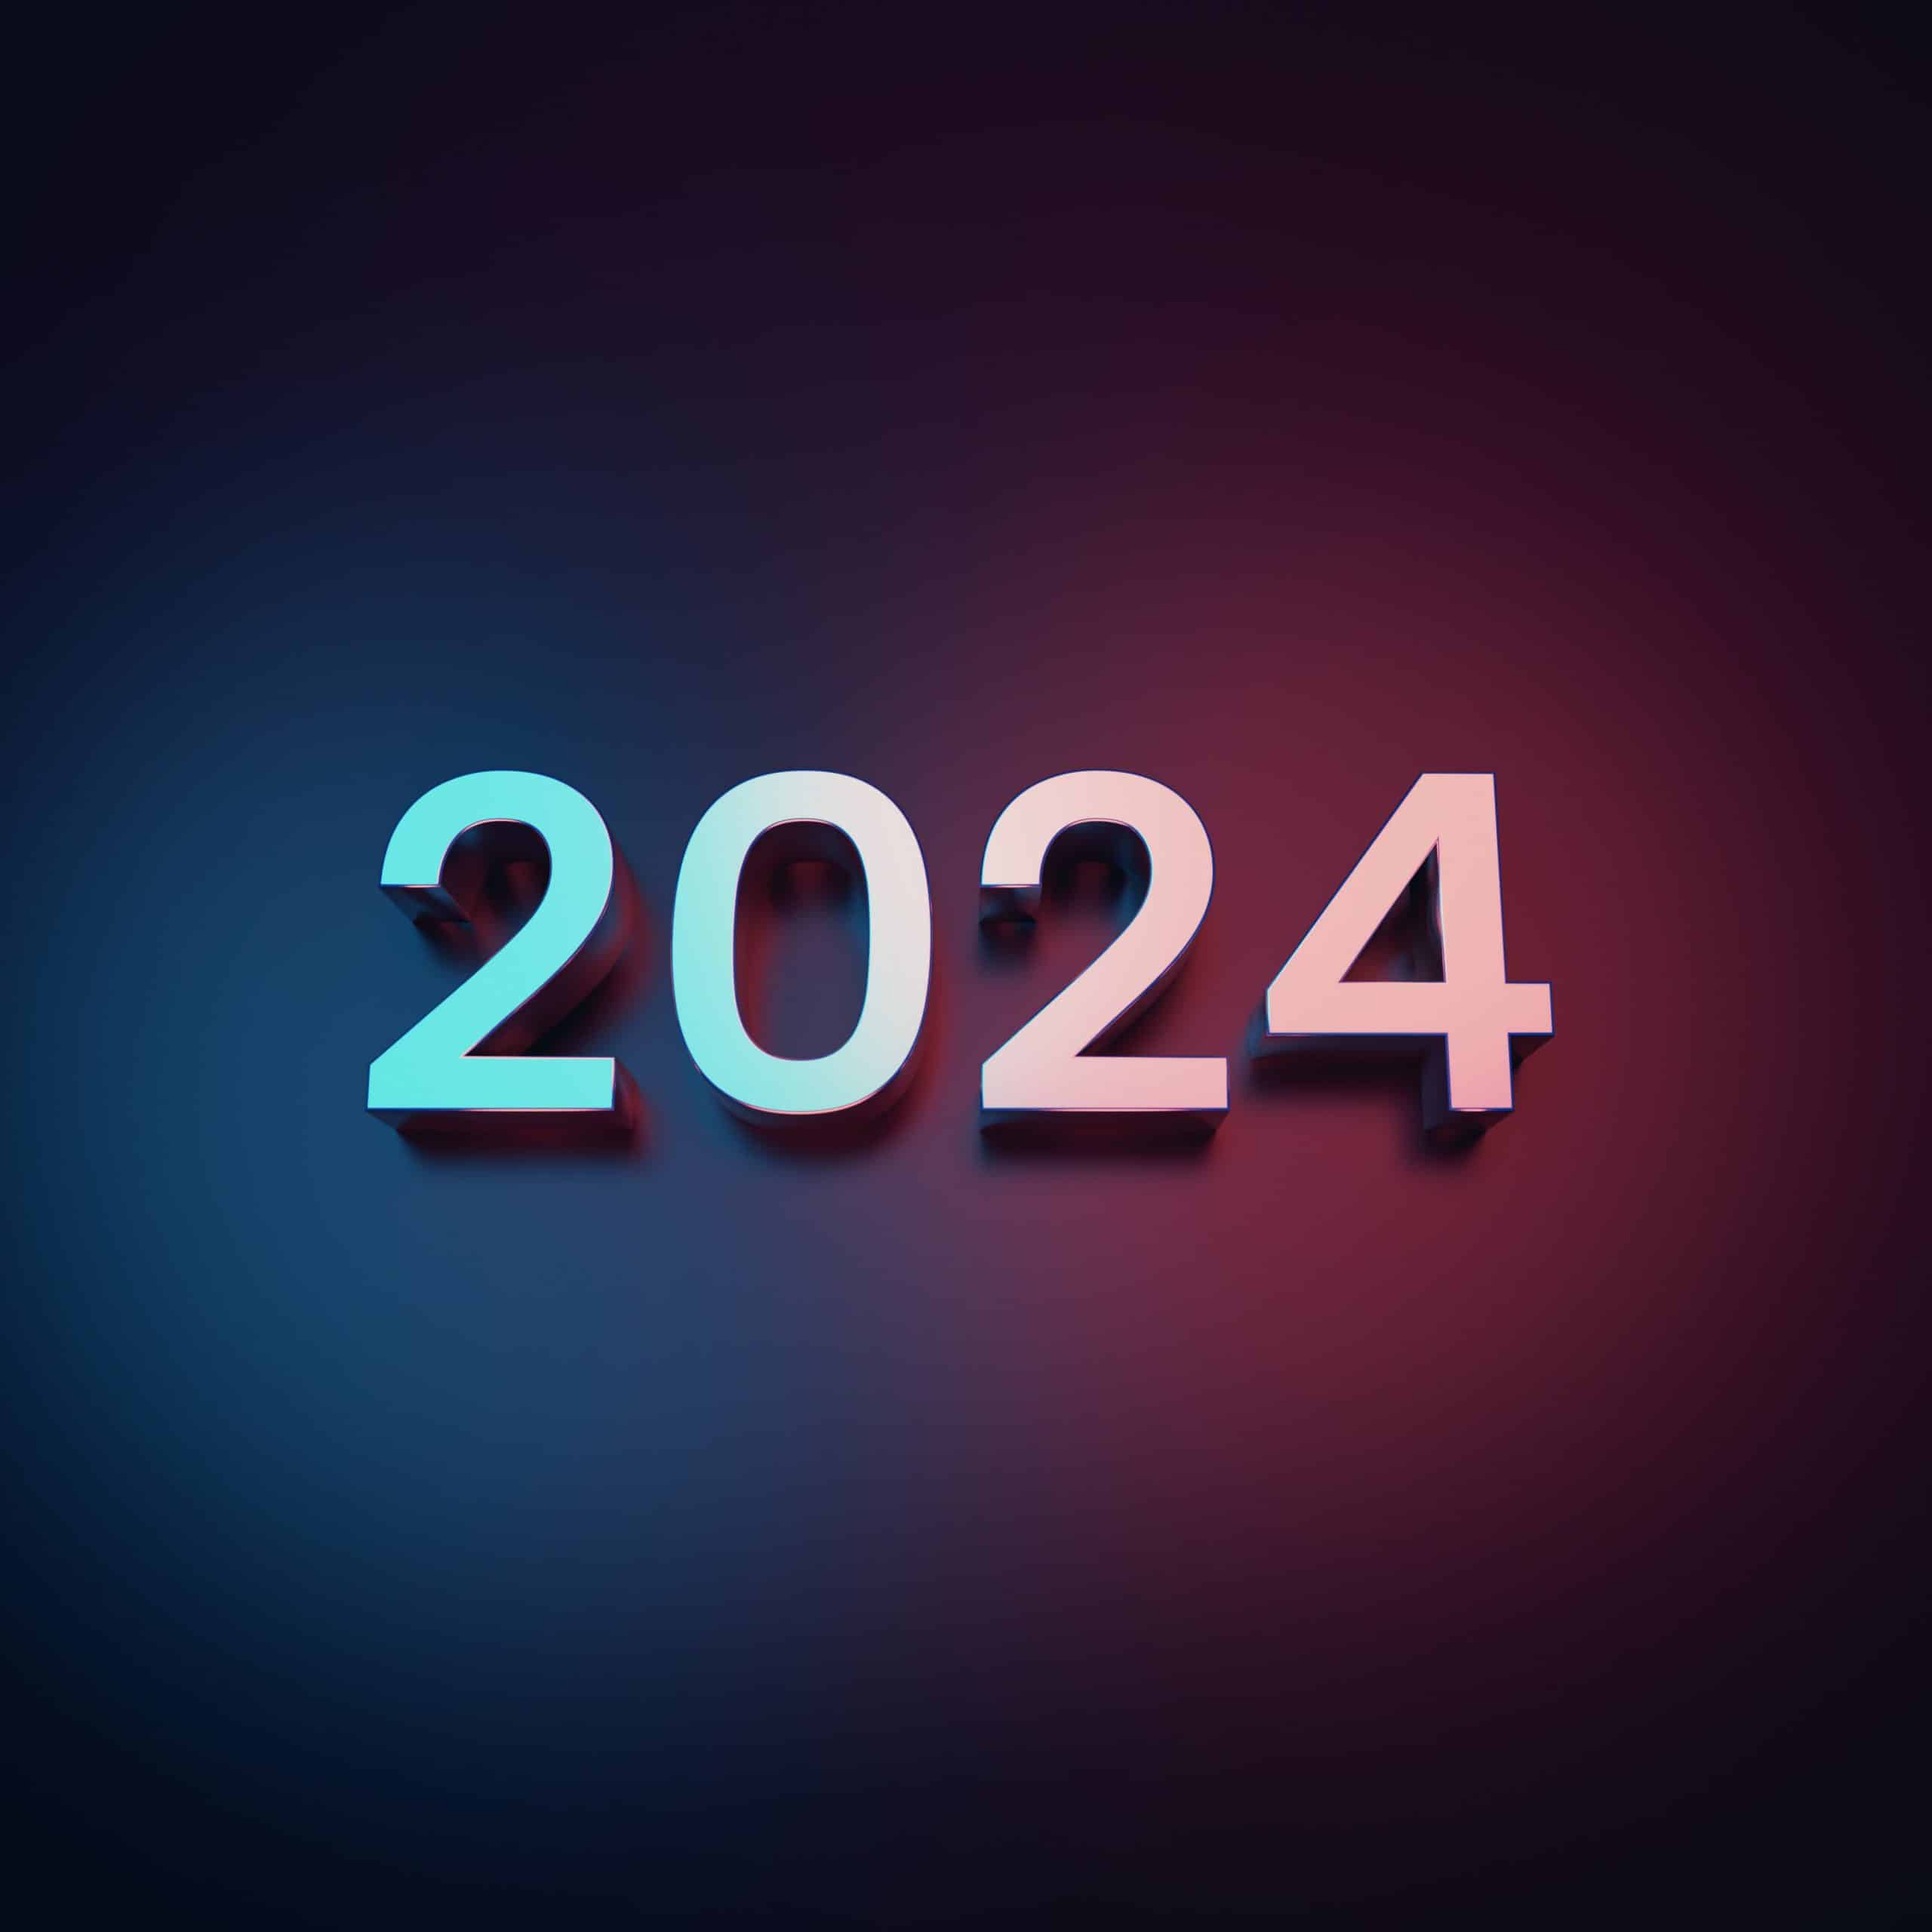 2024 France real estate market forecast